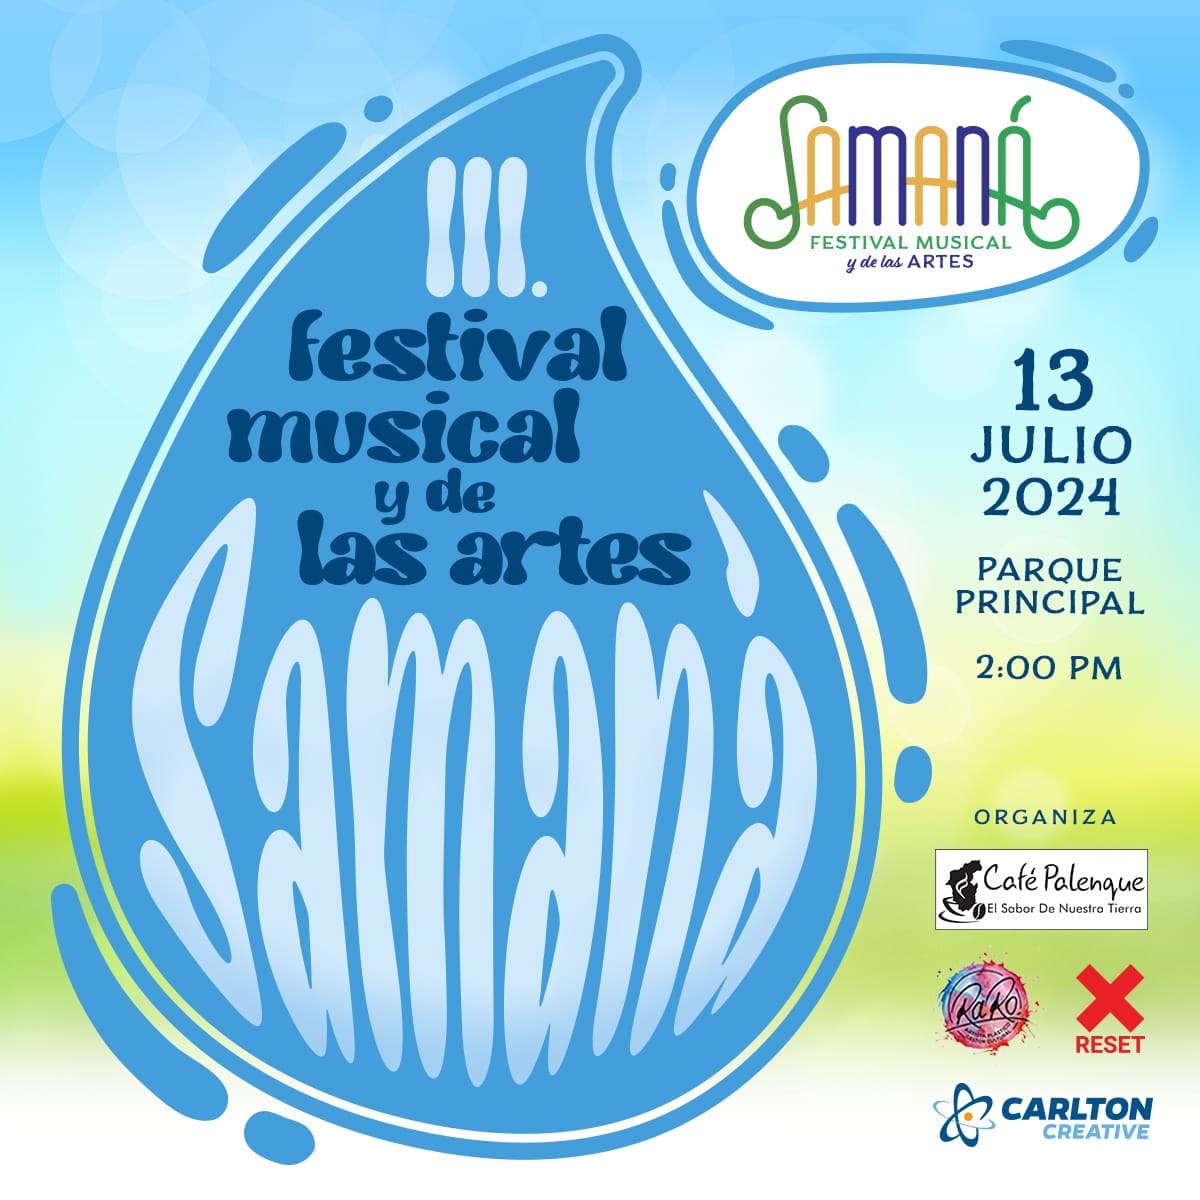 III FESTIVAL MUSICAL Y DE LAS ARTES SAMAN